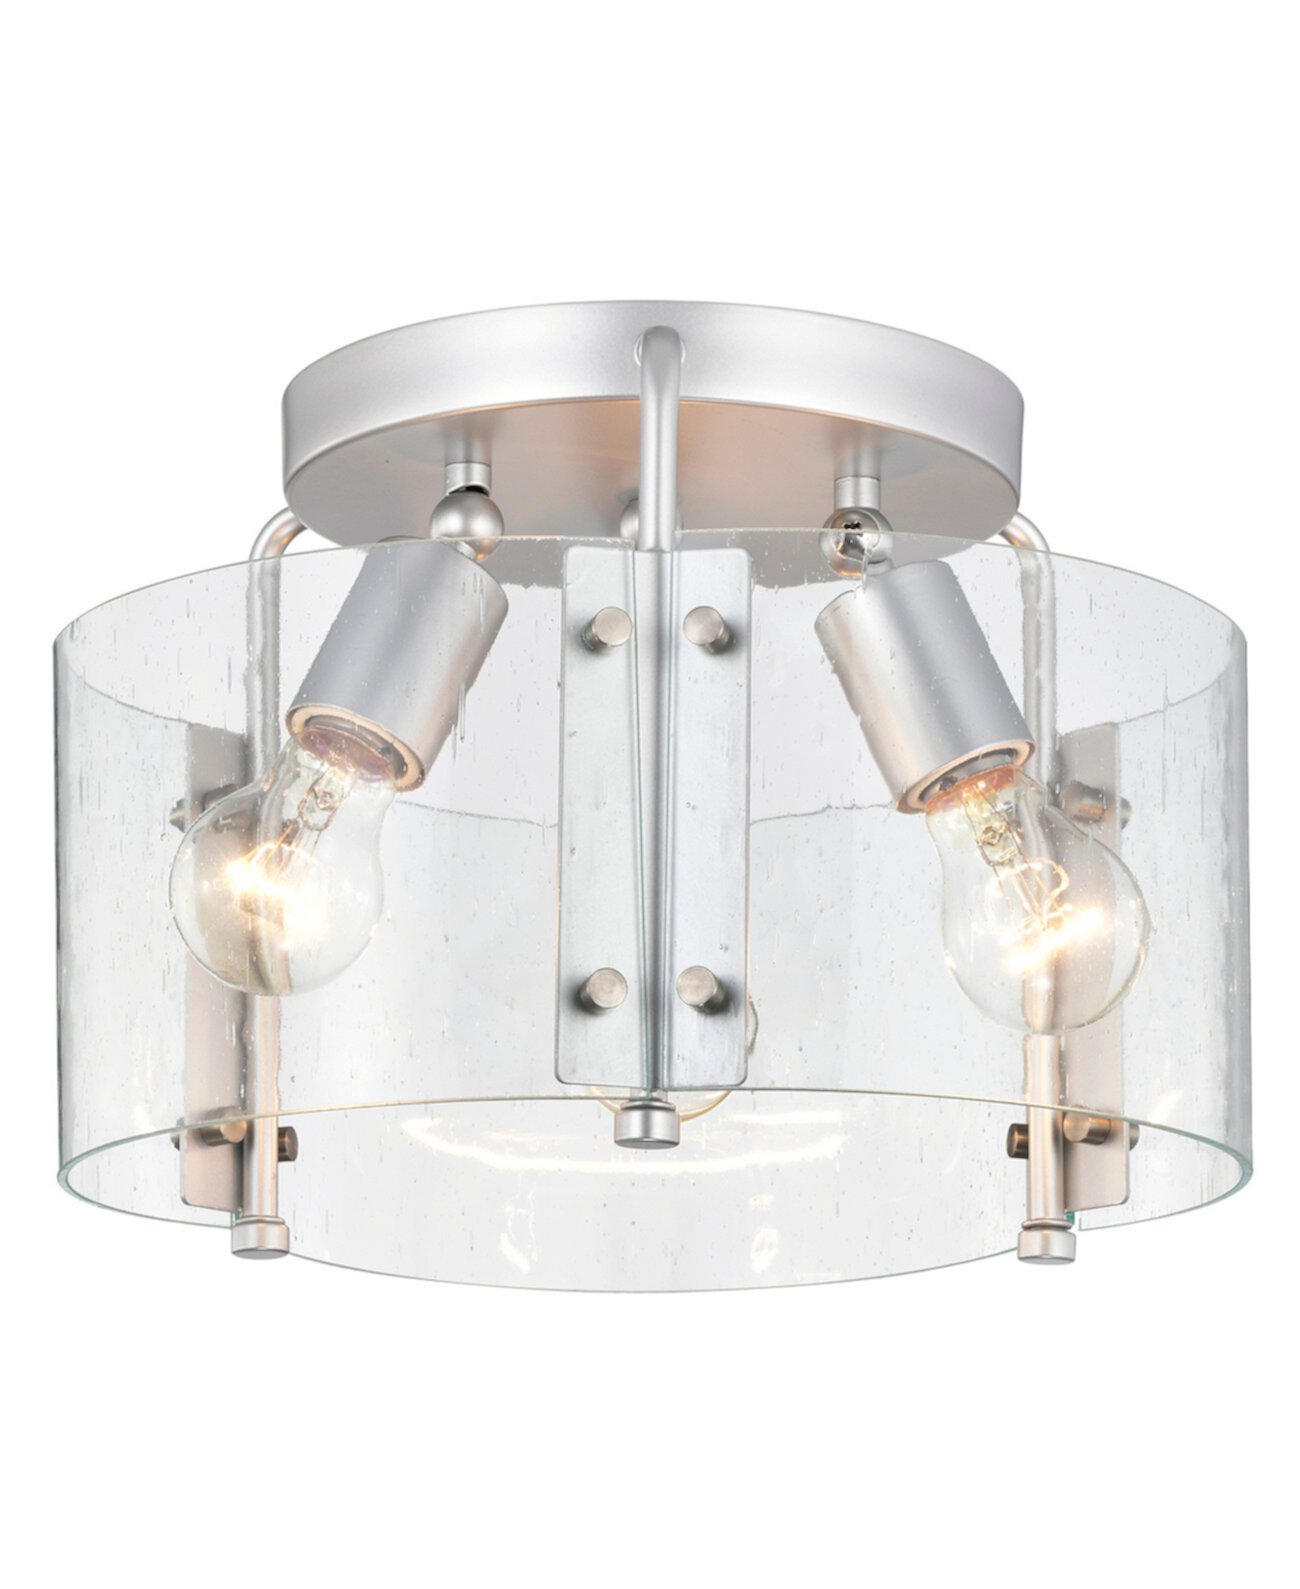 Потолочный светильник Fortuna 13 дюймов с 2 лампами для внутреннего монтажа полузаподлицо с комплектом освещения и пультом дистанционного управления Home Accessories